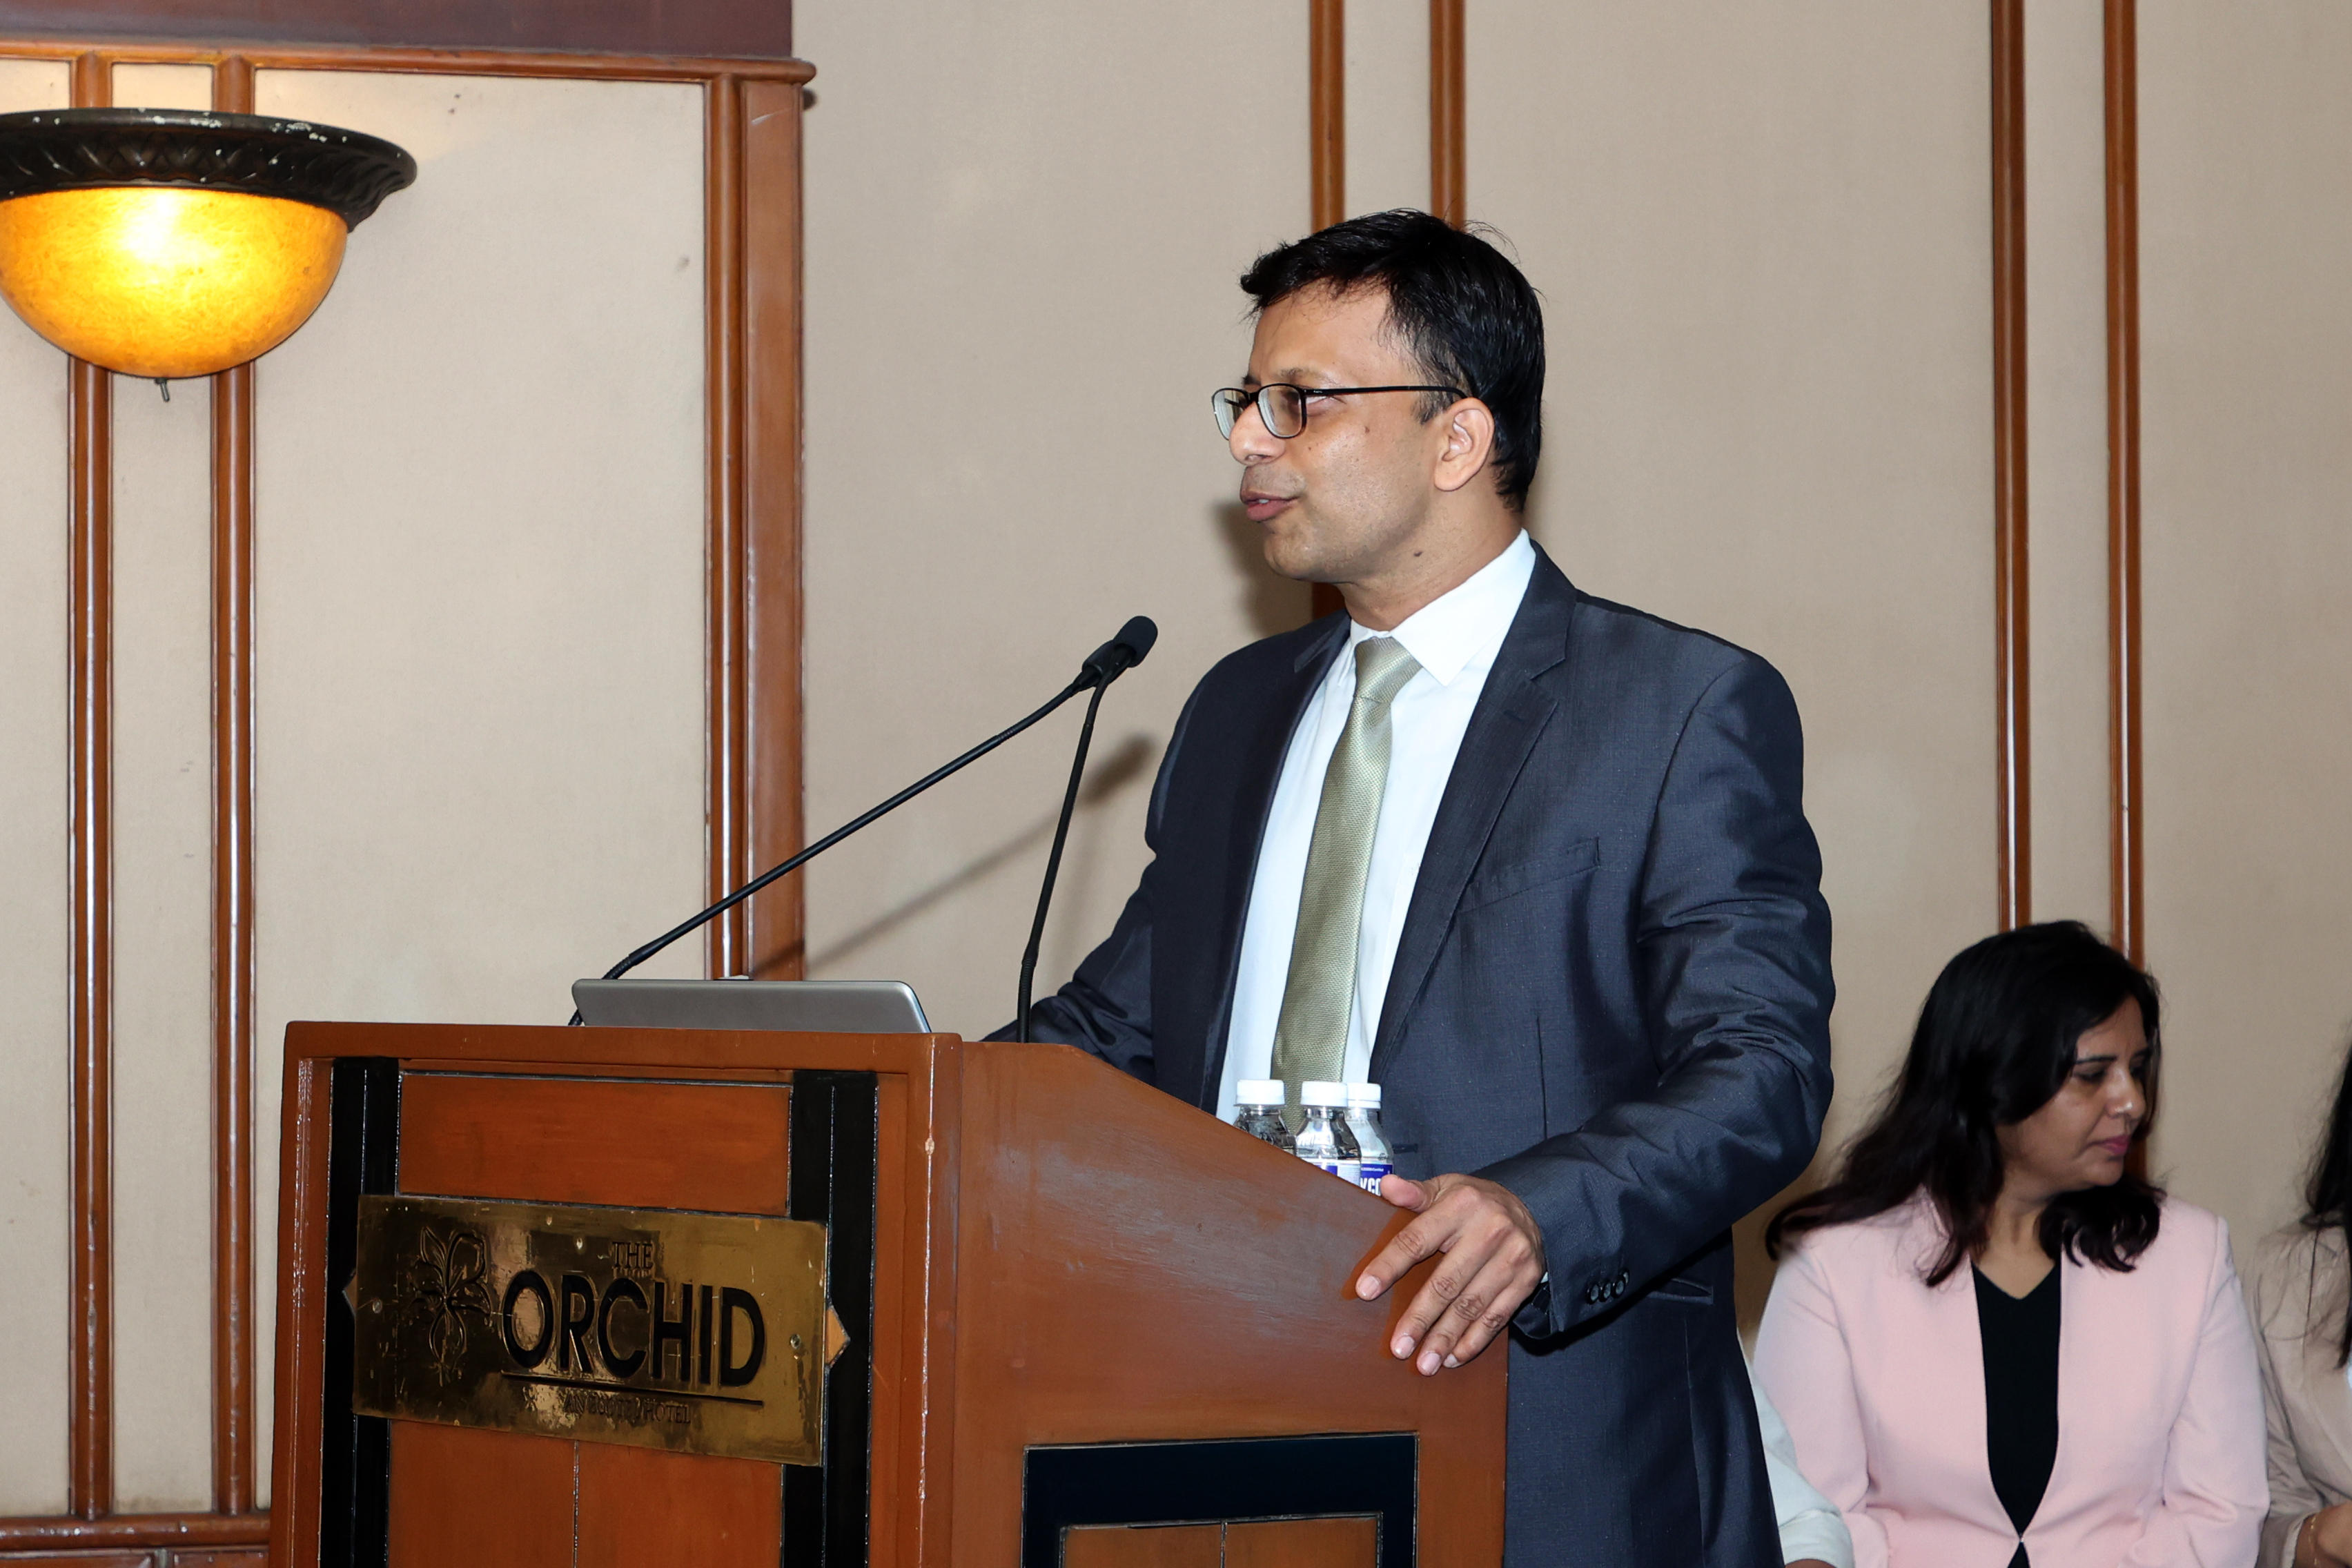 Dr. Pankaj Chivte, President, Indian Society of Digital Dentistry